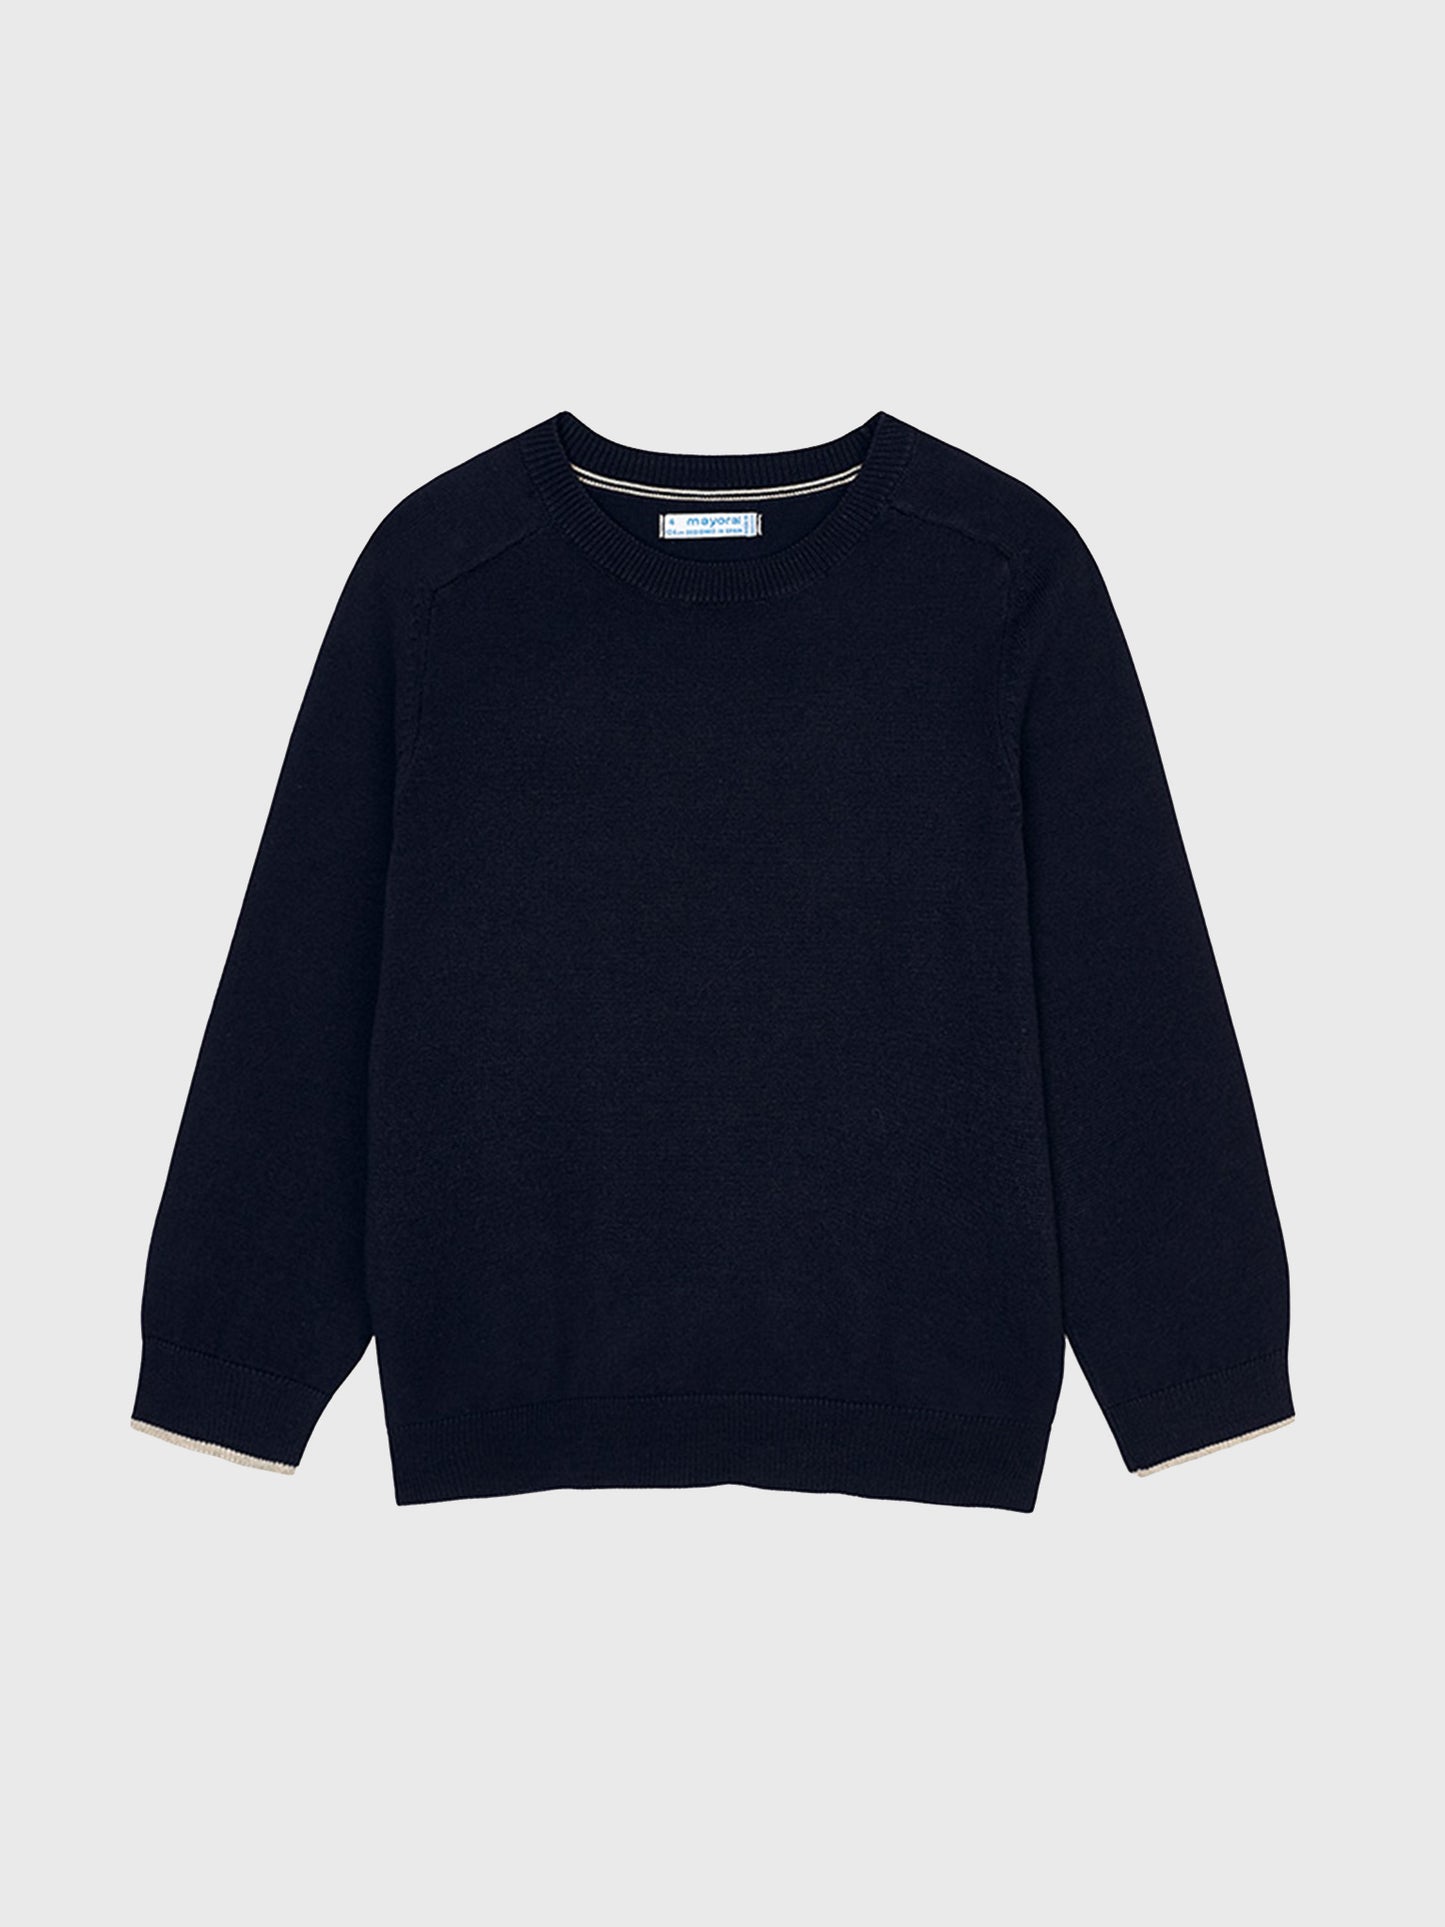 Mayoral Boys' Basic Cotton Sweater